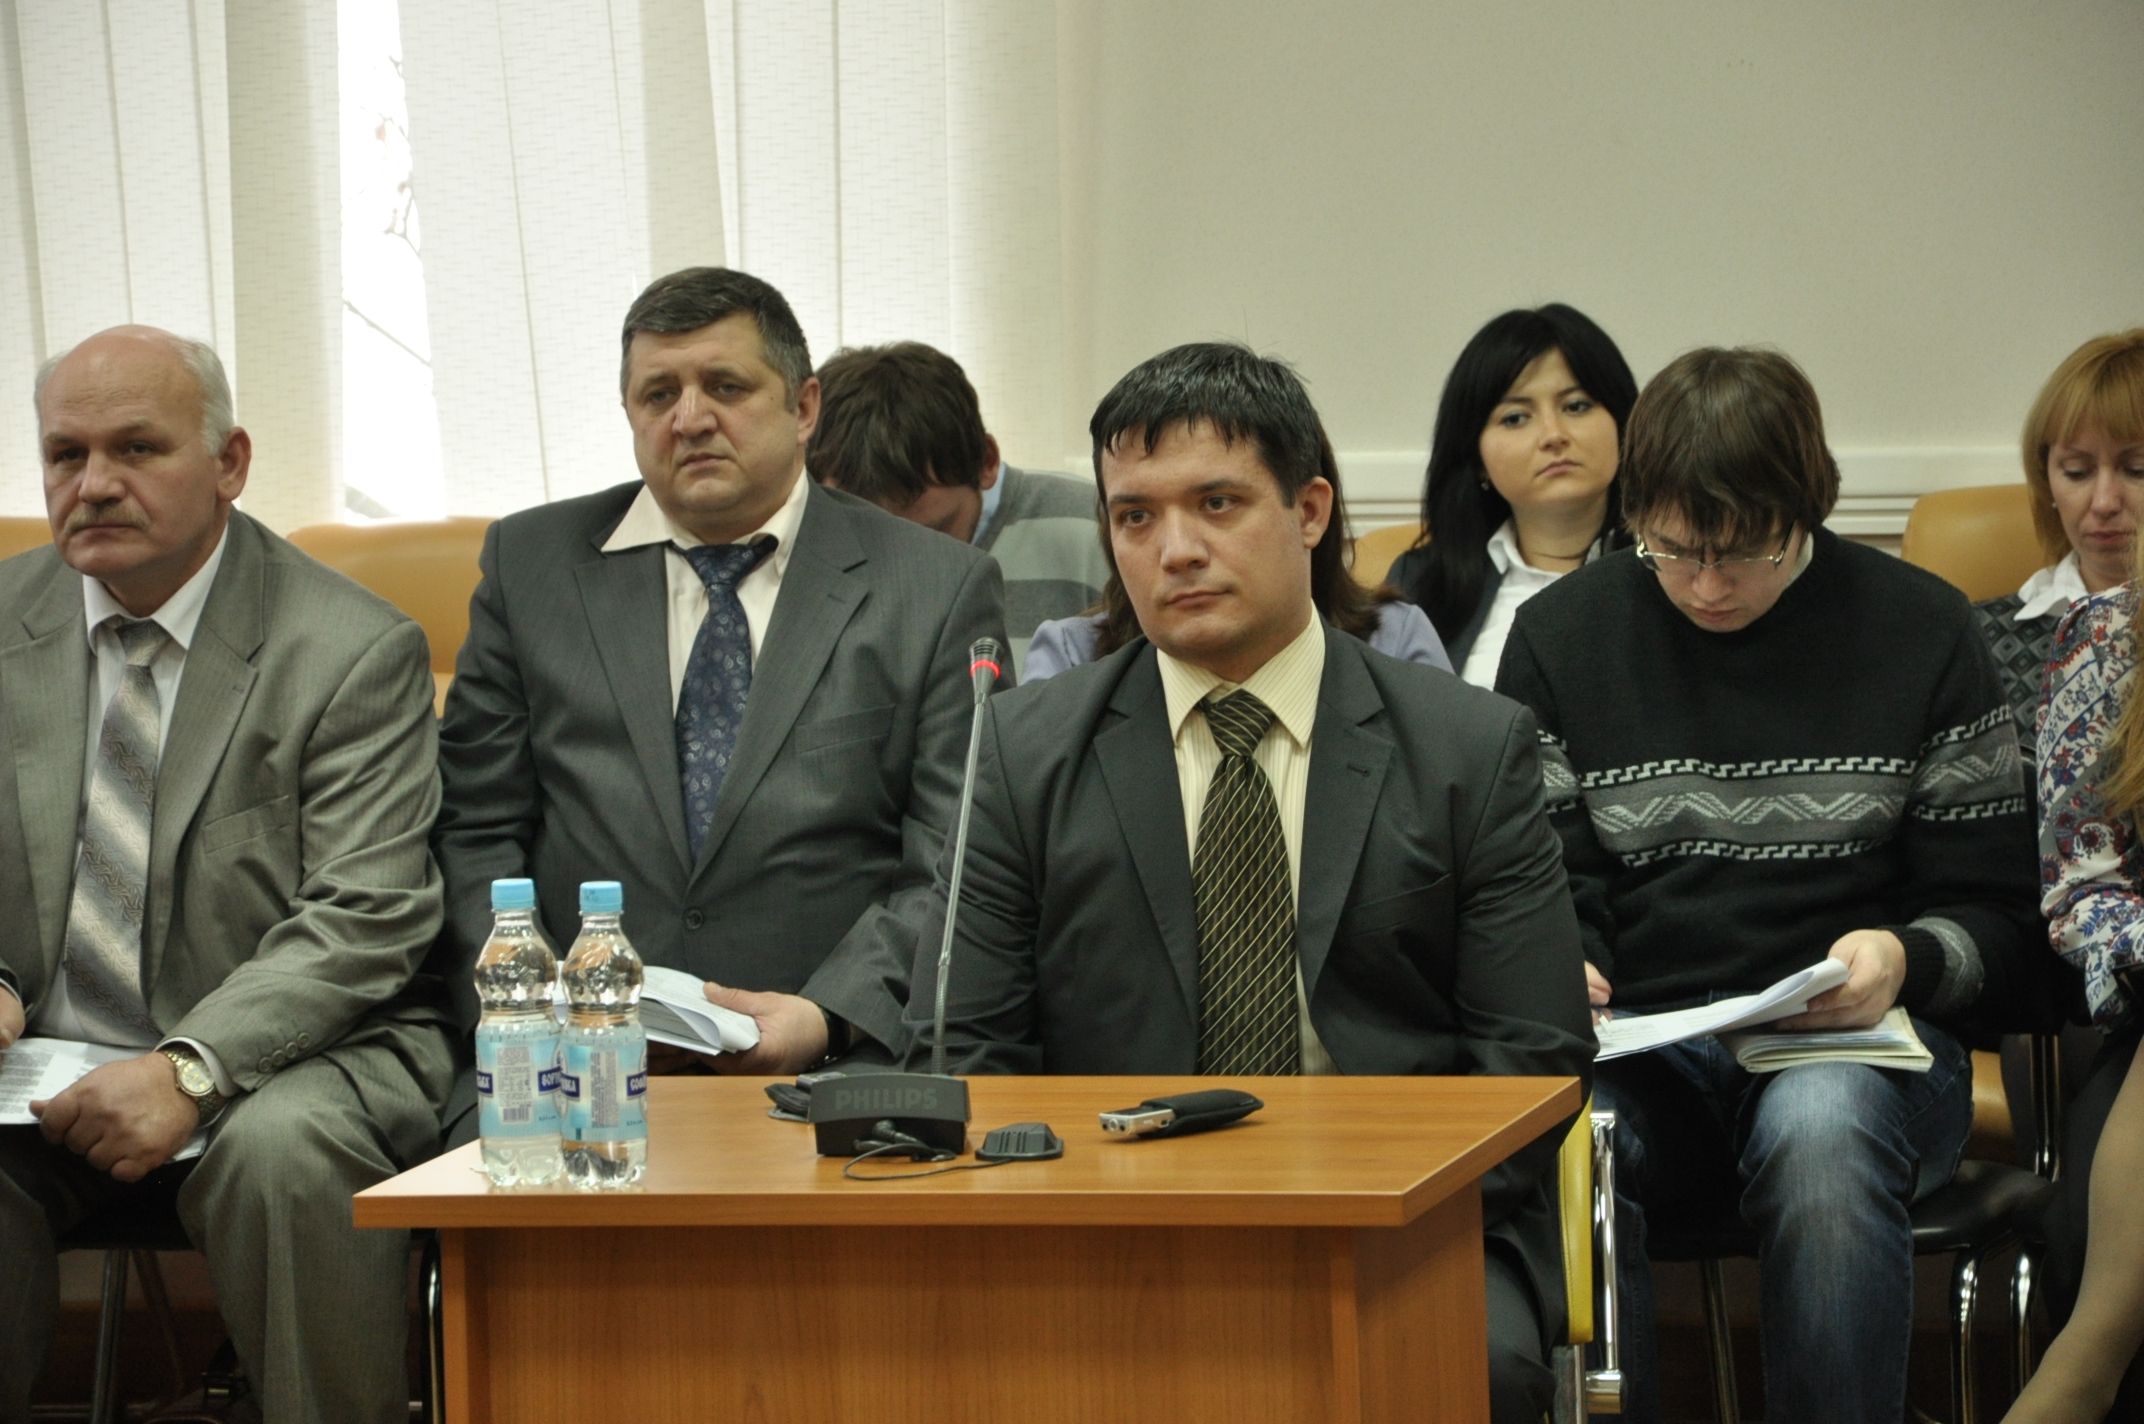 Суддю, якому доручили судити Волошина, подали Януковичу на звільнення